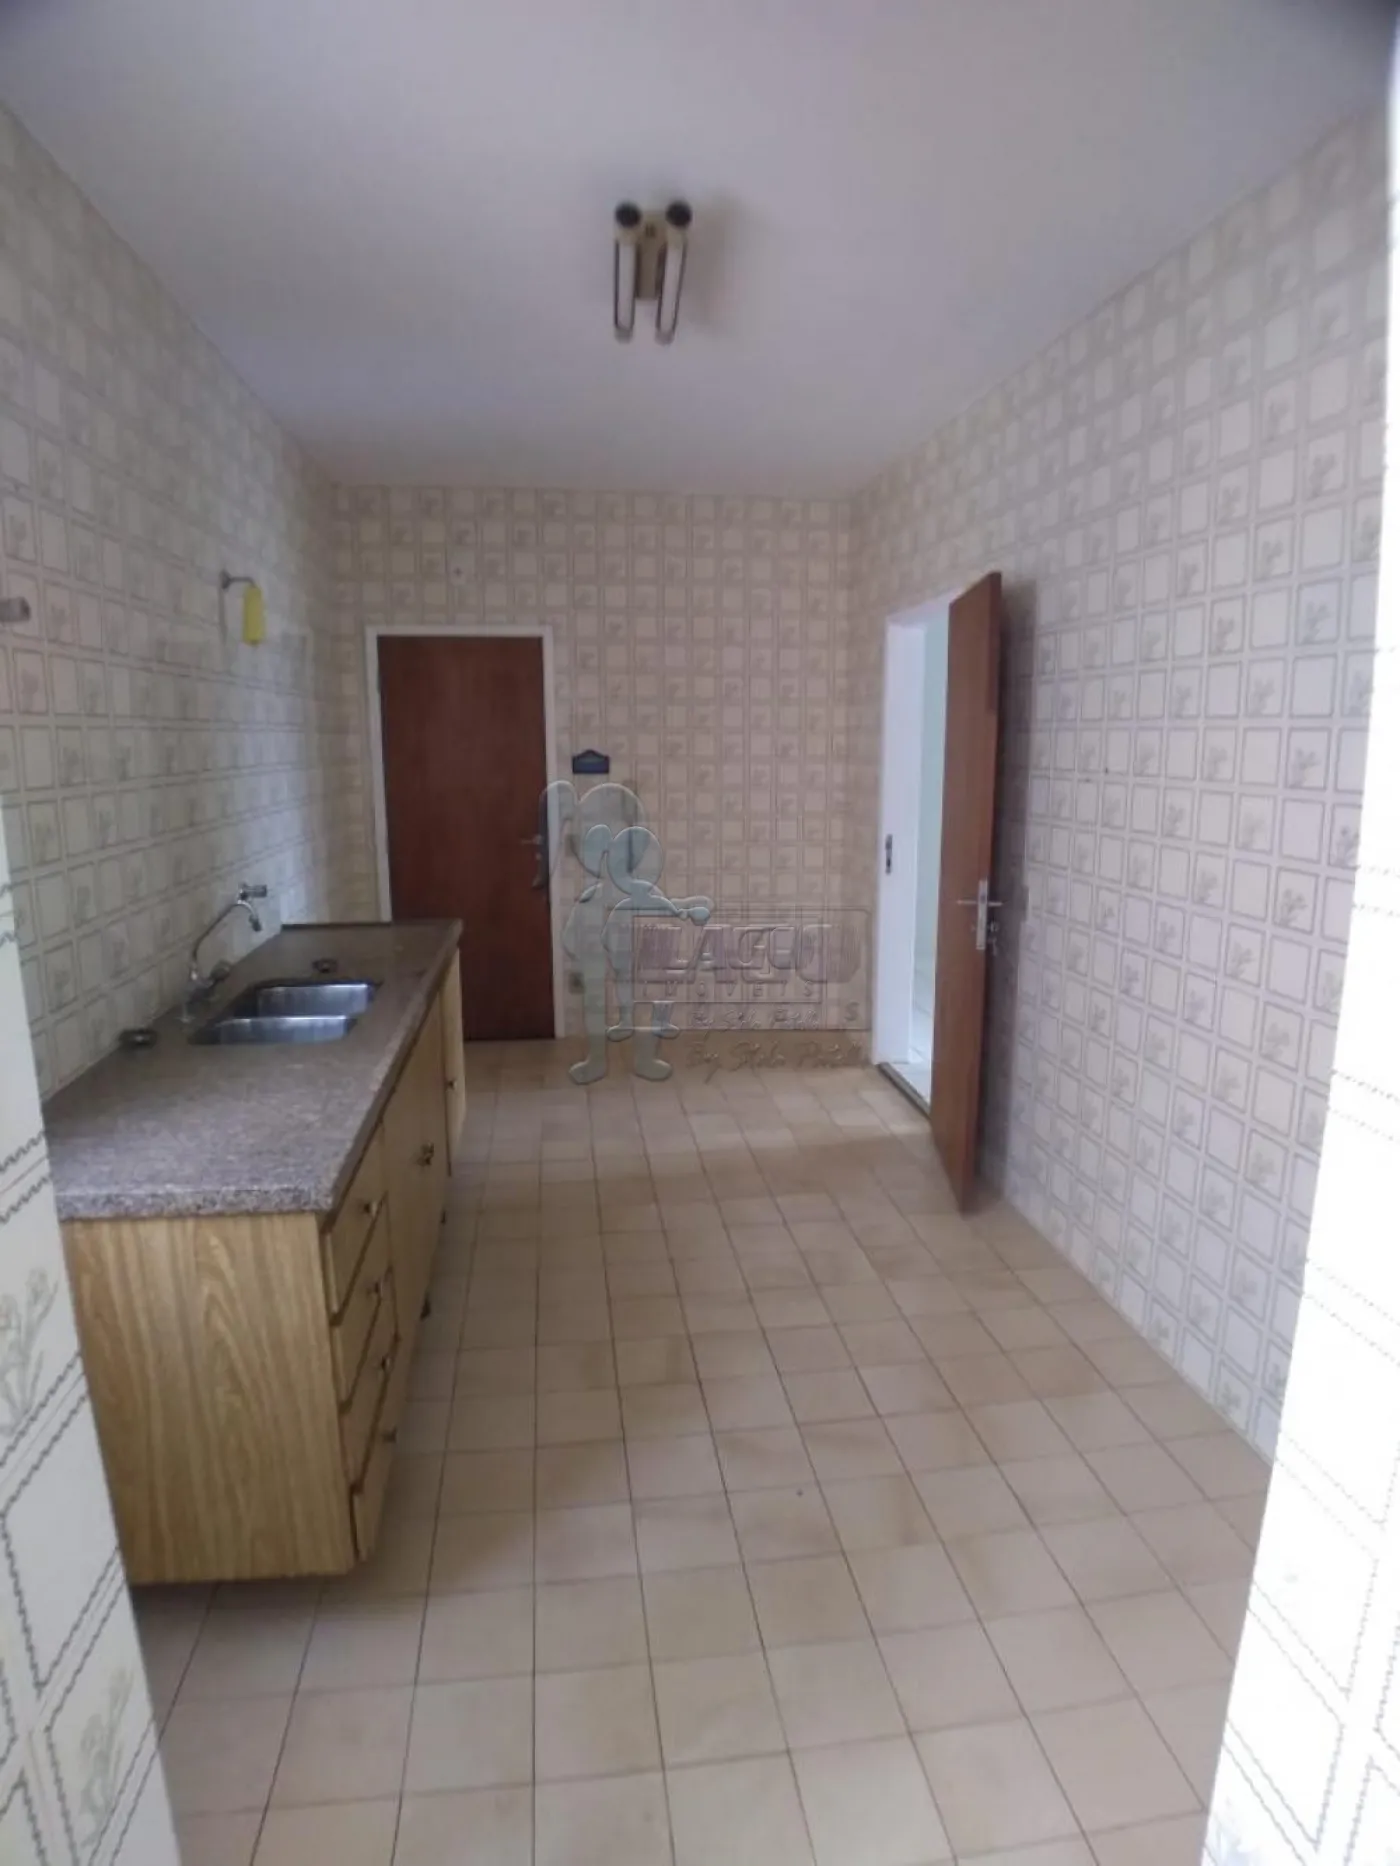 Comprar Apartamentos / Padrão em Ribeirão Preto R$ 424.000,00 - Foto 3